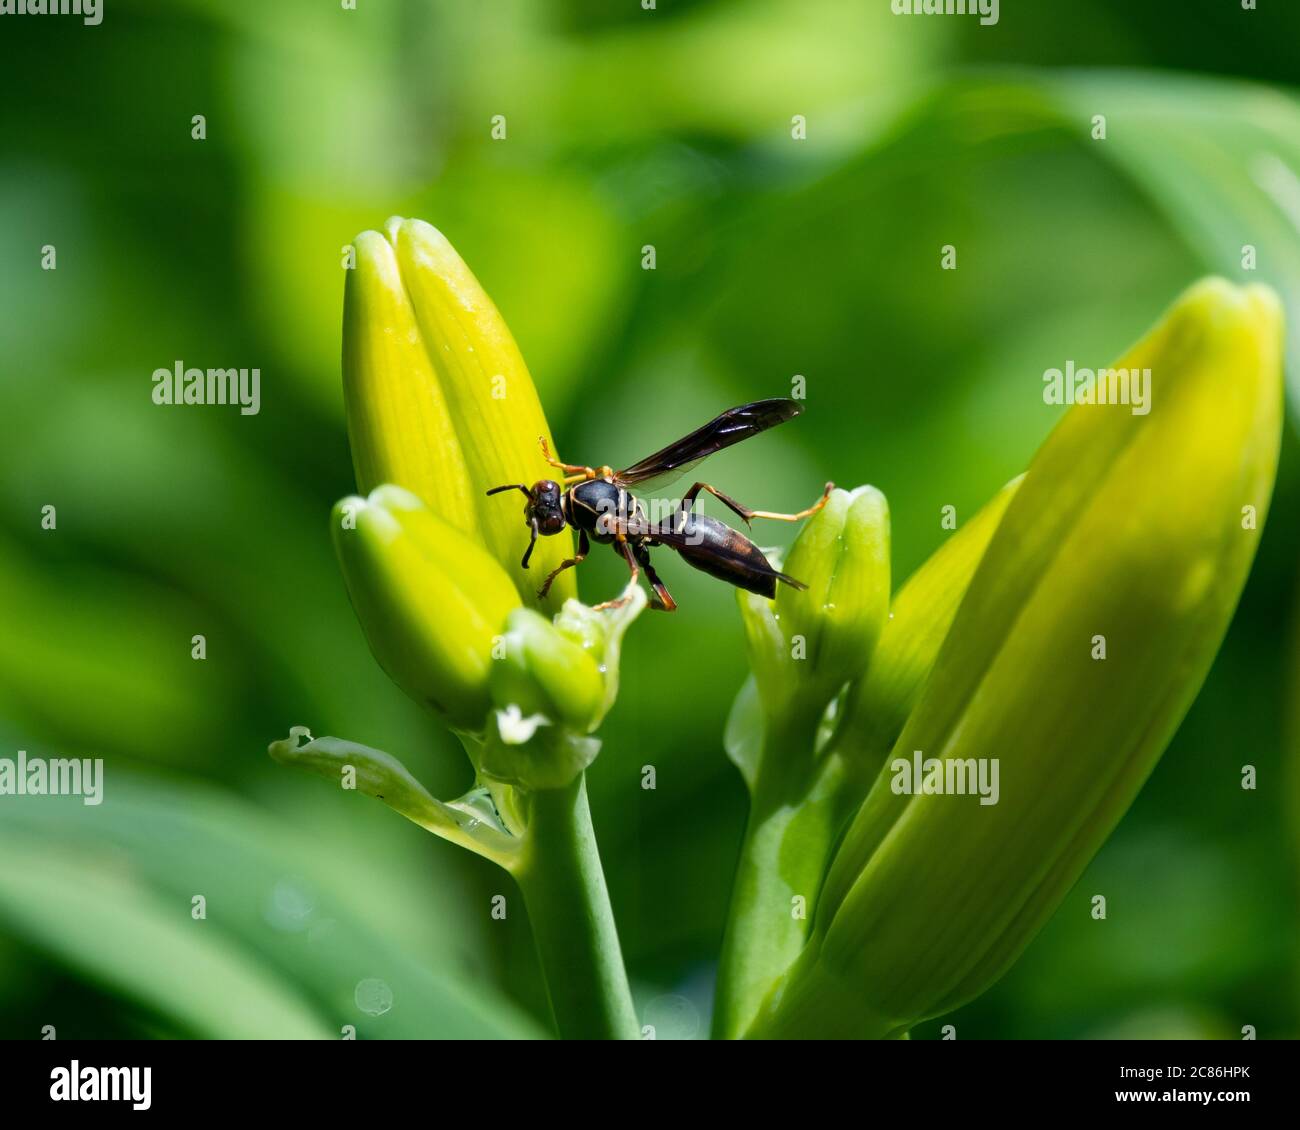 A era, Hymenoptera, che si nutriva delle gemme di una pianta di giglio in un giardino. Foto Stock